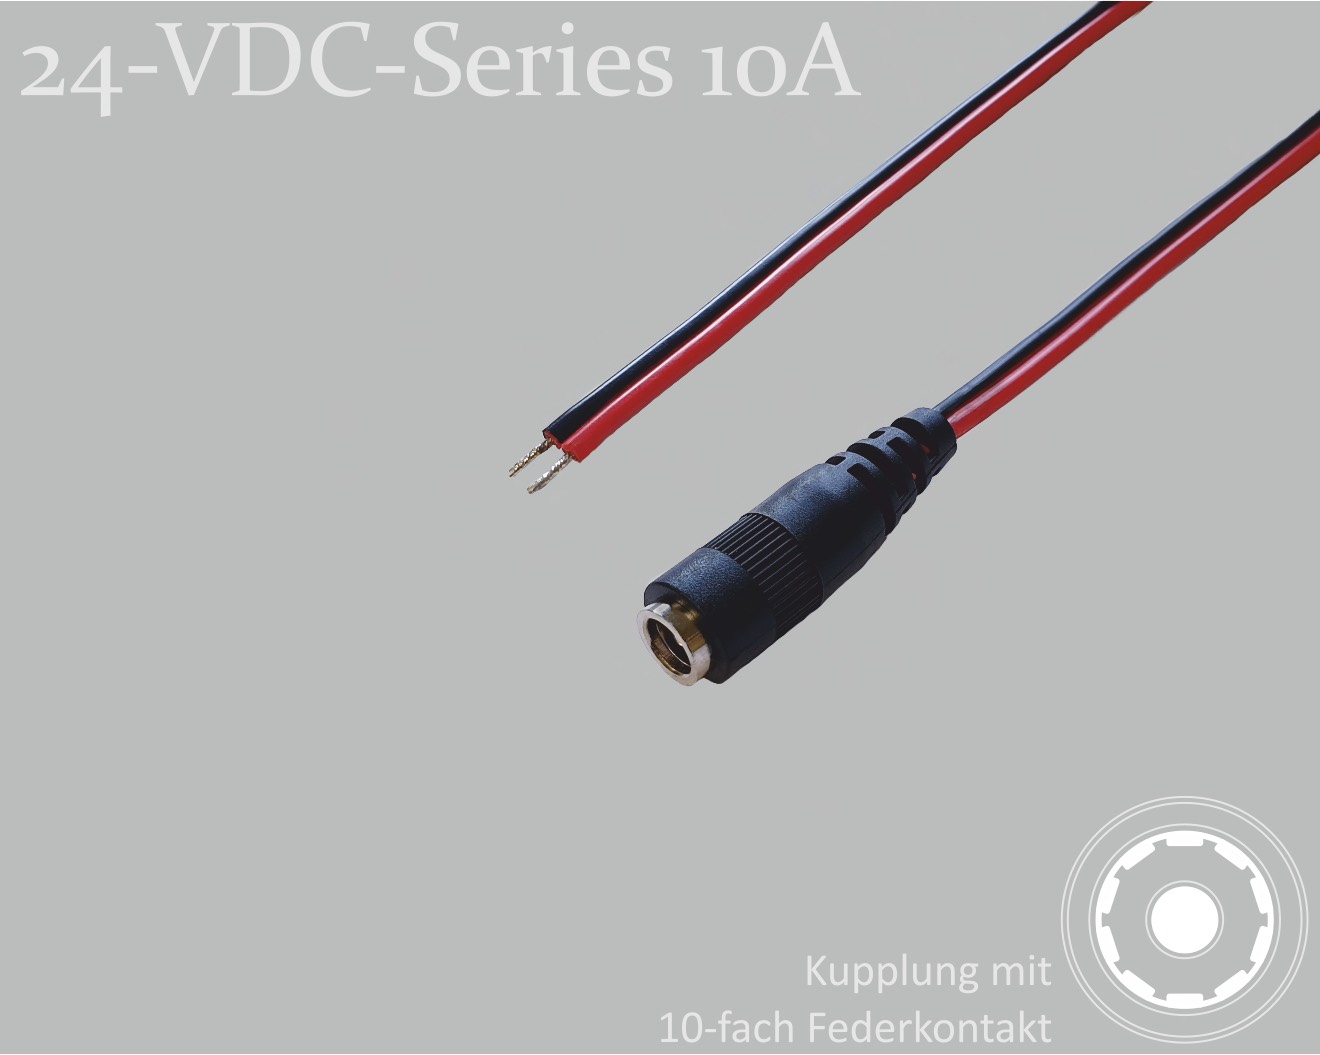 24-VDC-Series 10A, DC-Anschlusskabel, DC-Kupplung mit 10-Federkontakt 2,1x5,5mm, Flachkabel 2x0,75mm², rot/schwarz, verzinnte Enden, 1,5m